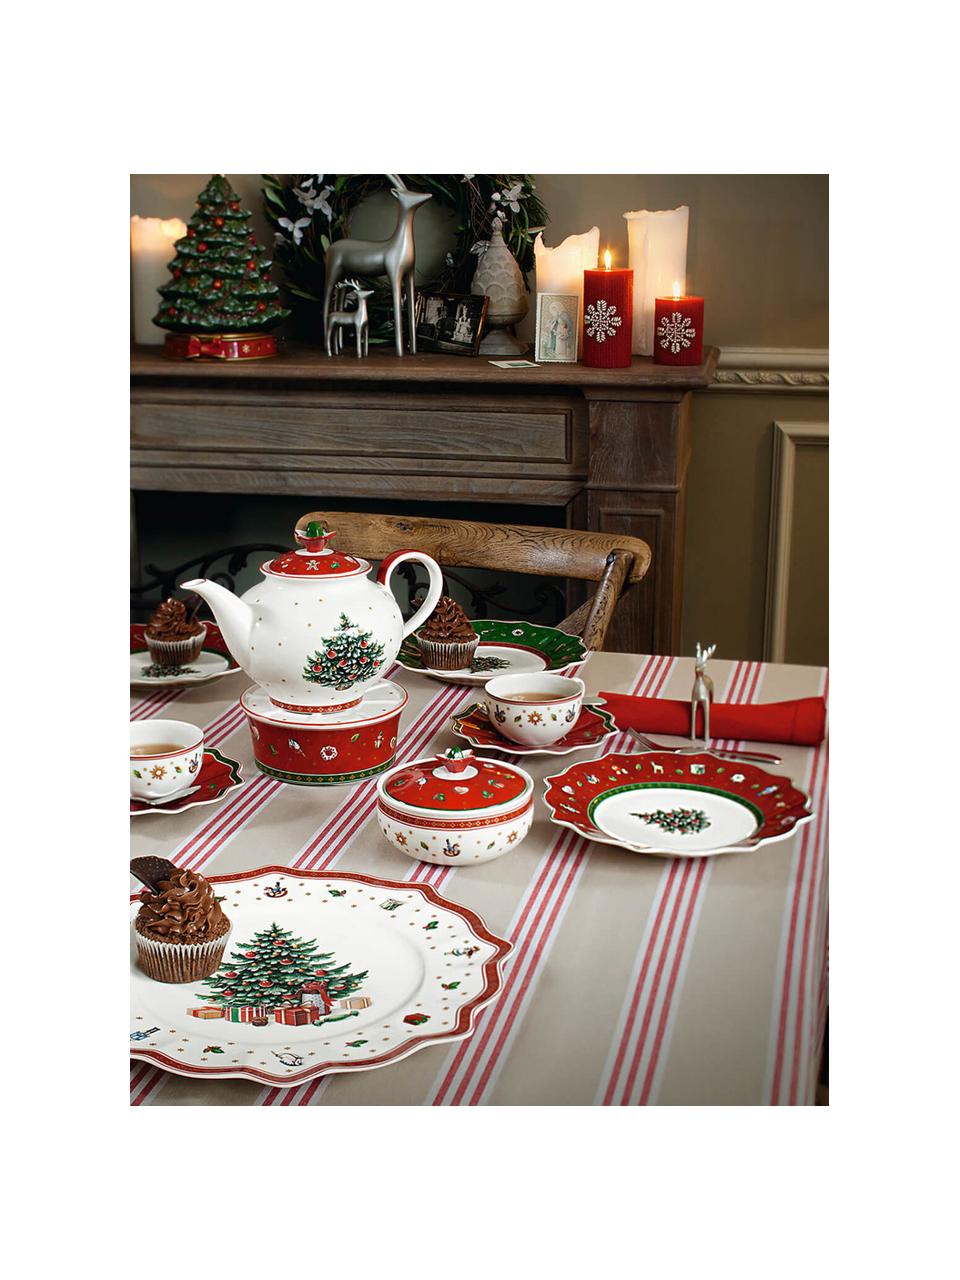 Set stoviglie in porcellana con motivo natalizio Delight, 2 persone, 6 pz, Porcellana Premium, Bianco, rosso, multicolore, Set in varie misure